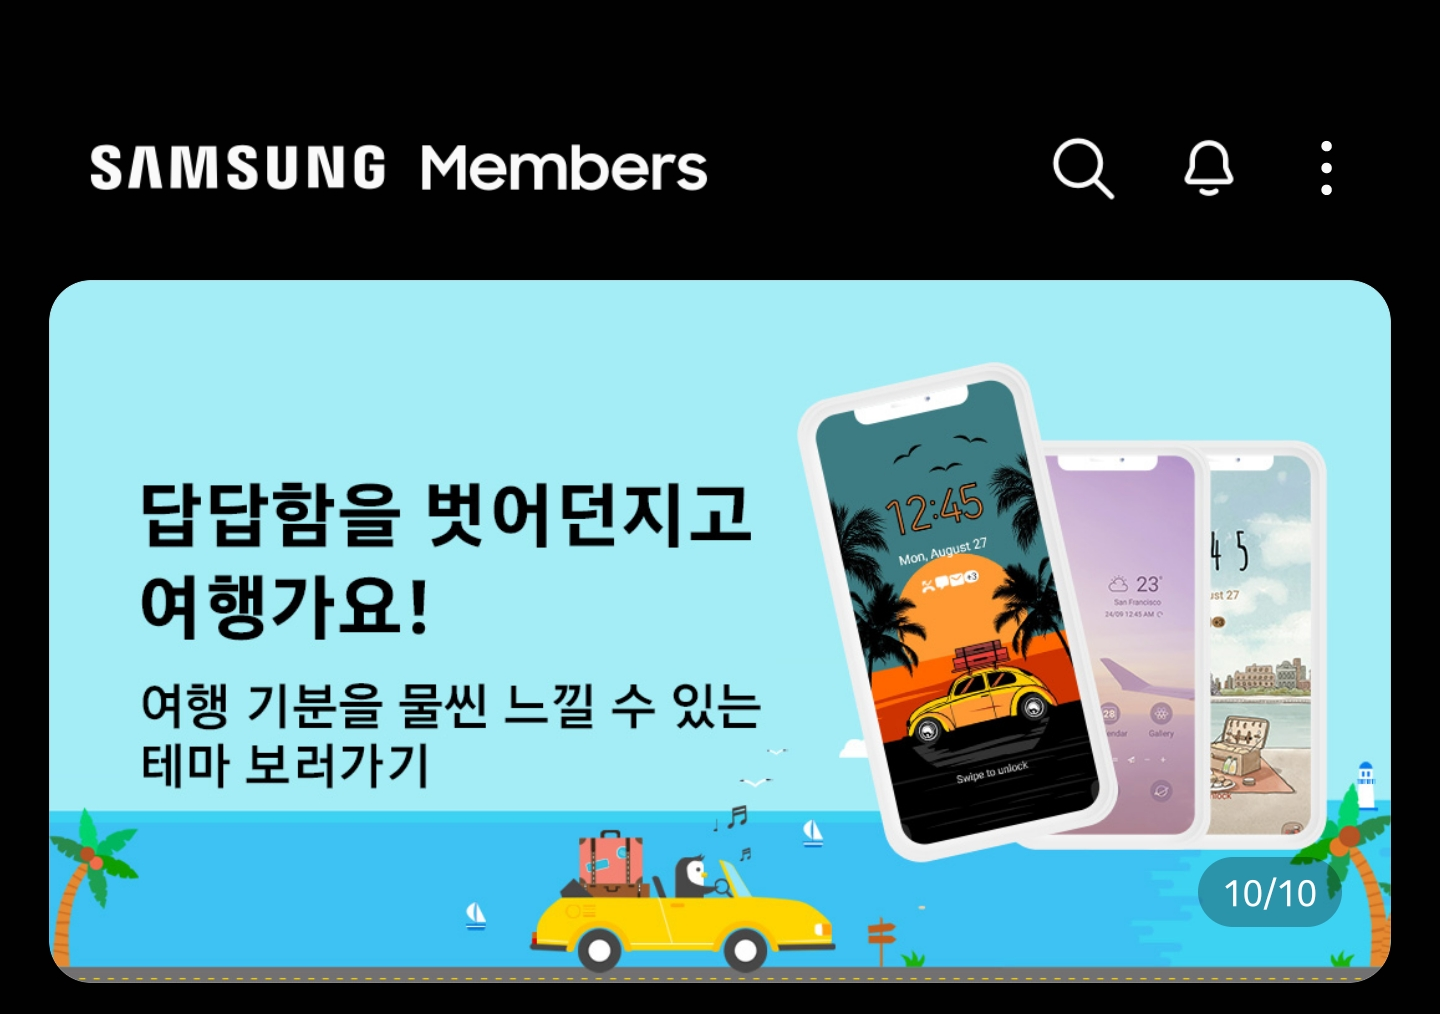 Galaxy Store quảng cáo ứng dụng Samsung Members bằng ảnh iPhone